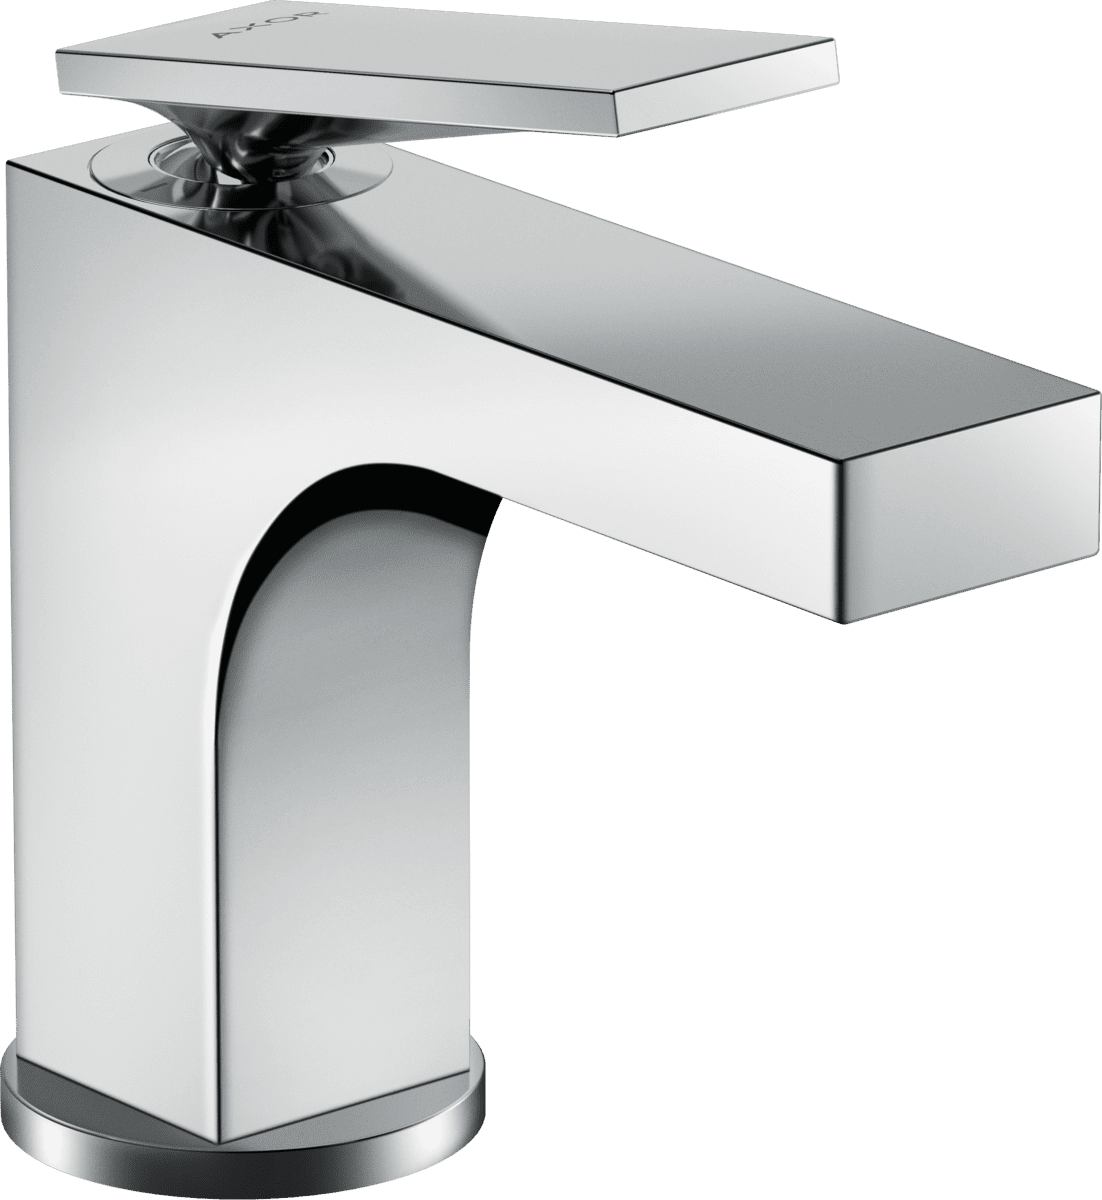 Bild von HANSGROHE AXOR Citterio Einhebel-Waschtischmischer 90 mit Hebelgriff für Handwaschbecken mit Zugstangen-Ablaufgarnitur #39022000 - Chrom